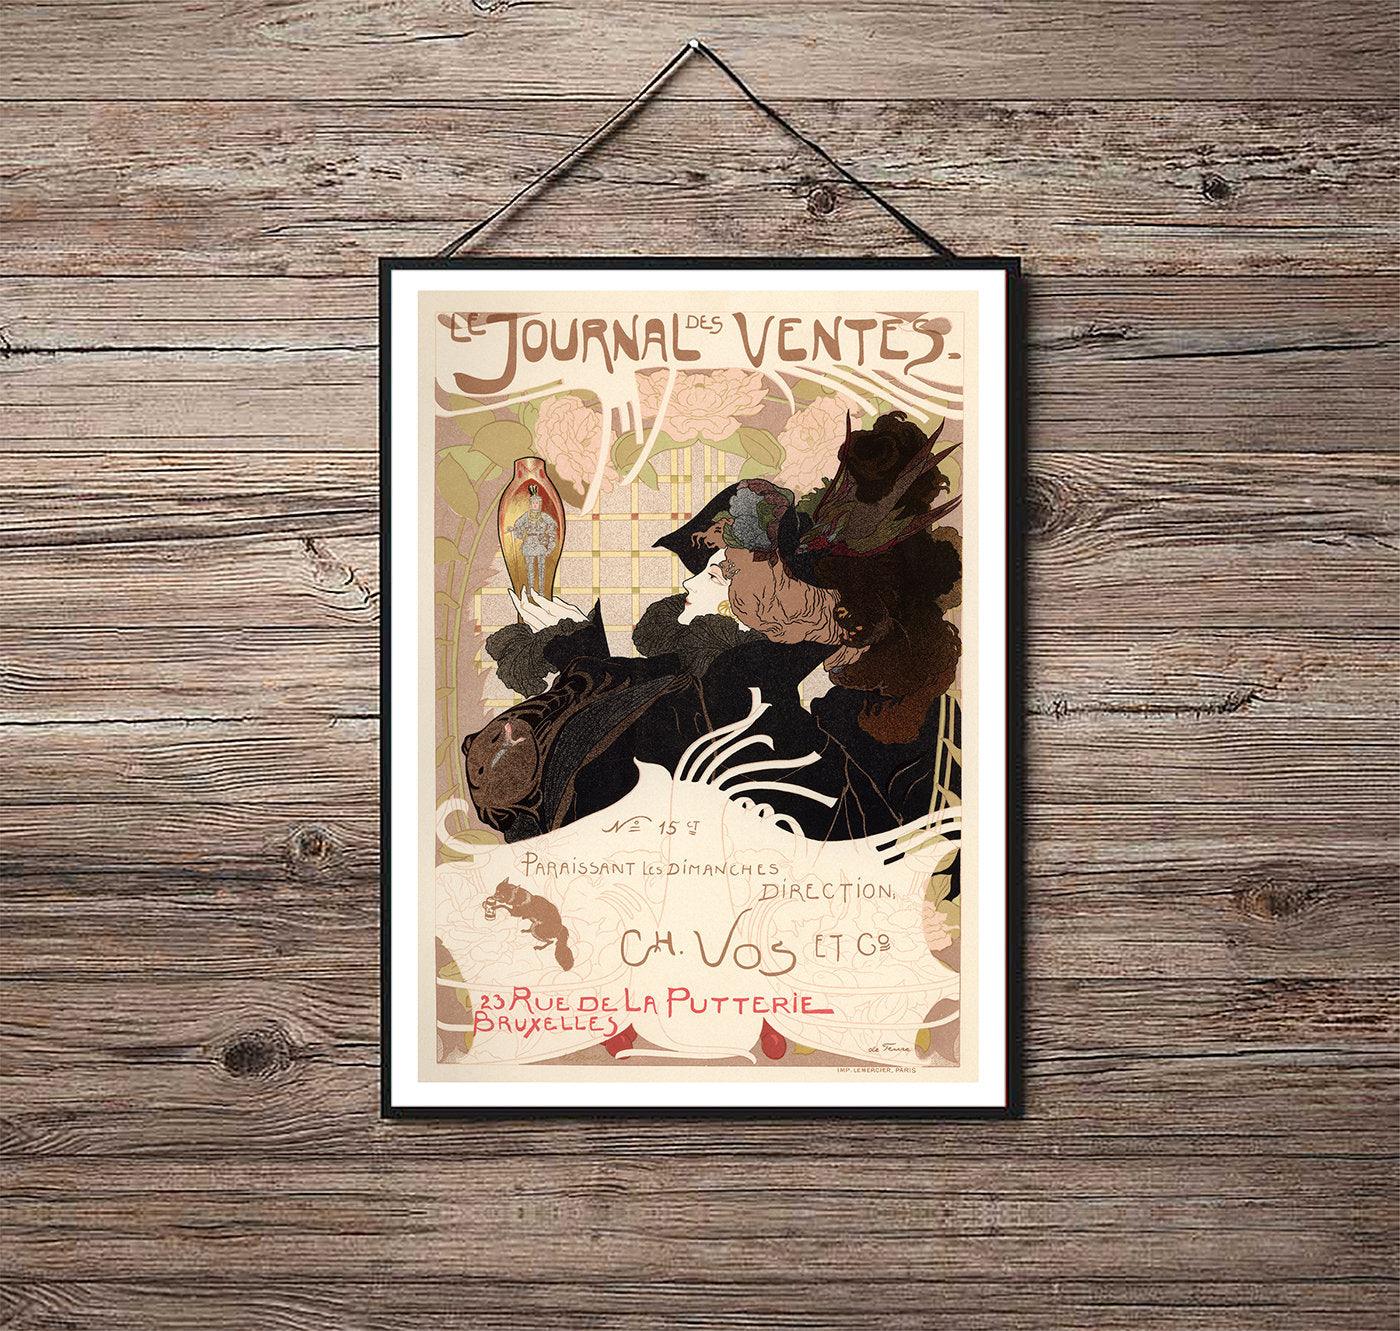 Le Journal des Ventes - 1897 - Art Nouveau - Classic Posters